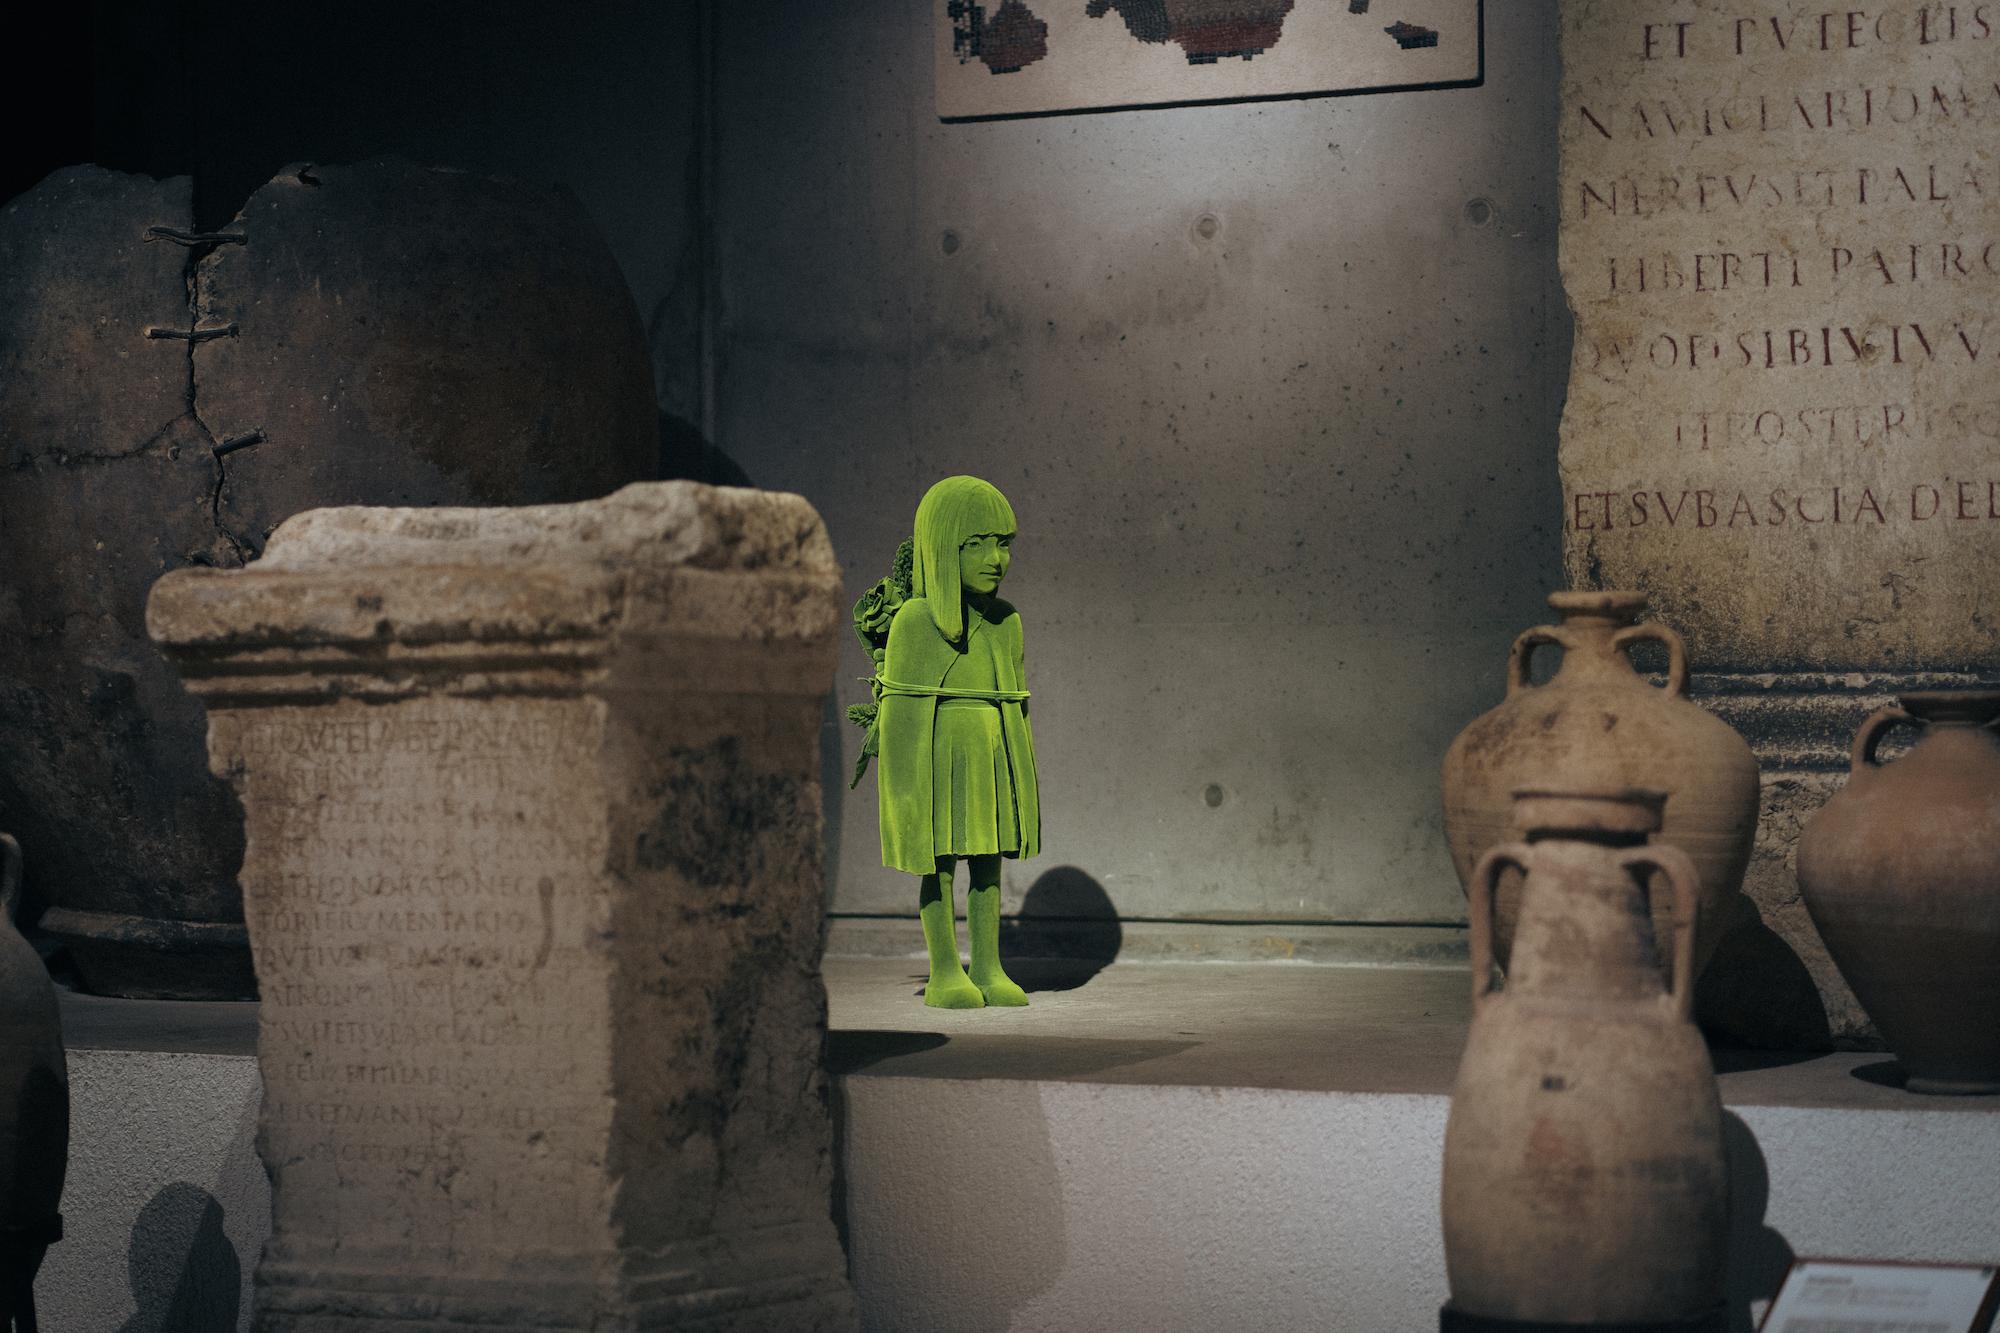 Kuvassa veistos, joka esittää vihreää sammalen peitossa olevaa tyttöhahmoa. Veistos on sijoitettu antiikinaikaisten ruukkujen ja kivipylväiden joukkoon.